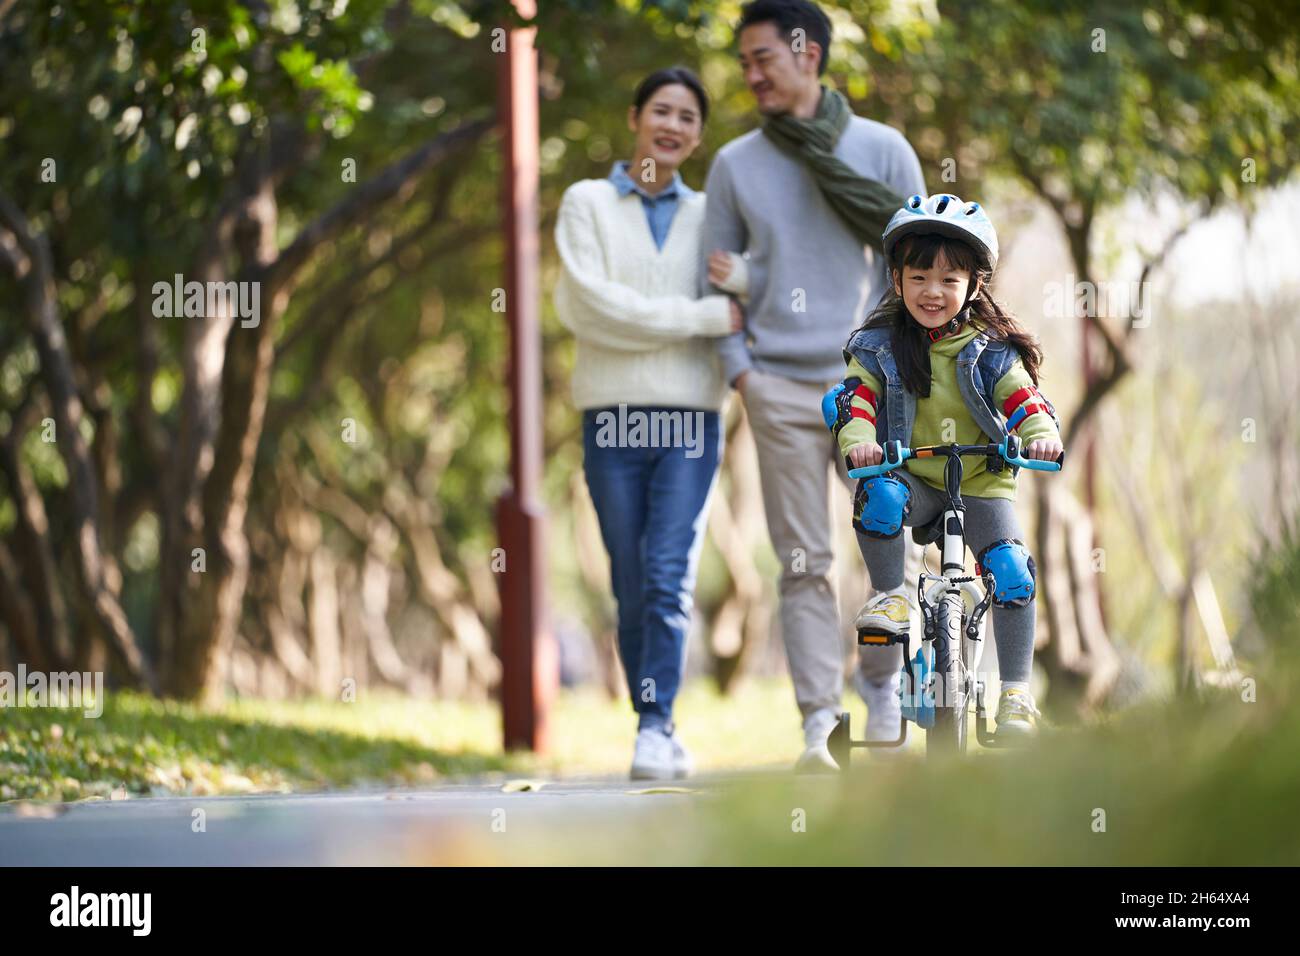 Kleine asiatische Mädchen mit Helm und voller Schutz Zahnräder Reiten Fahrrad im Stadtpark mit Eltern beobachten von hinten Stockfoto